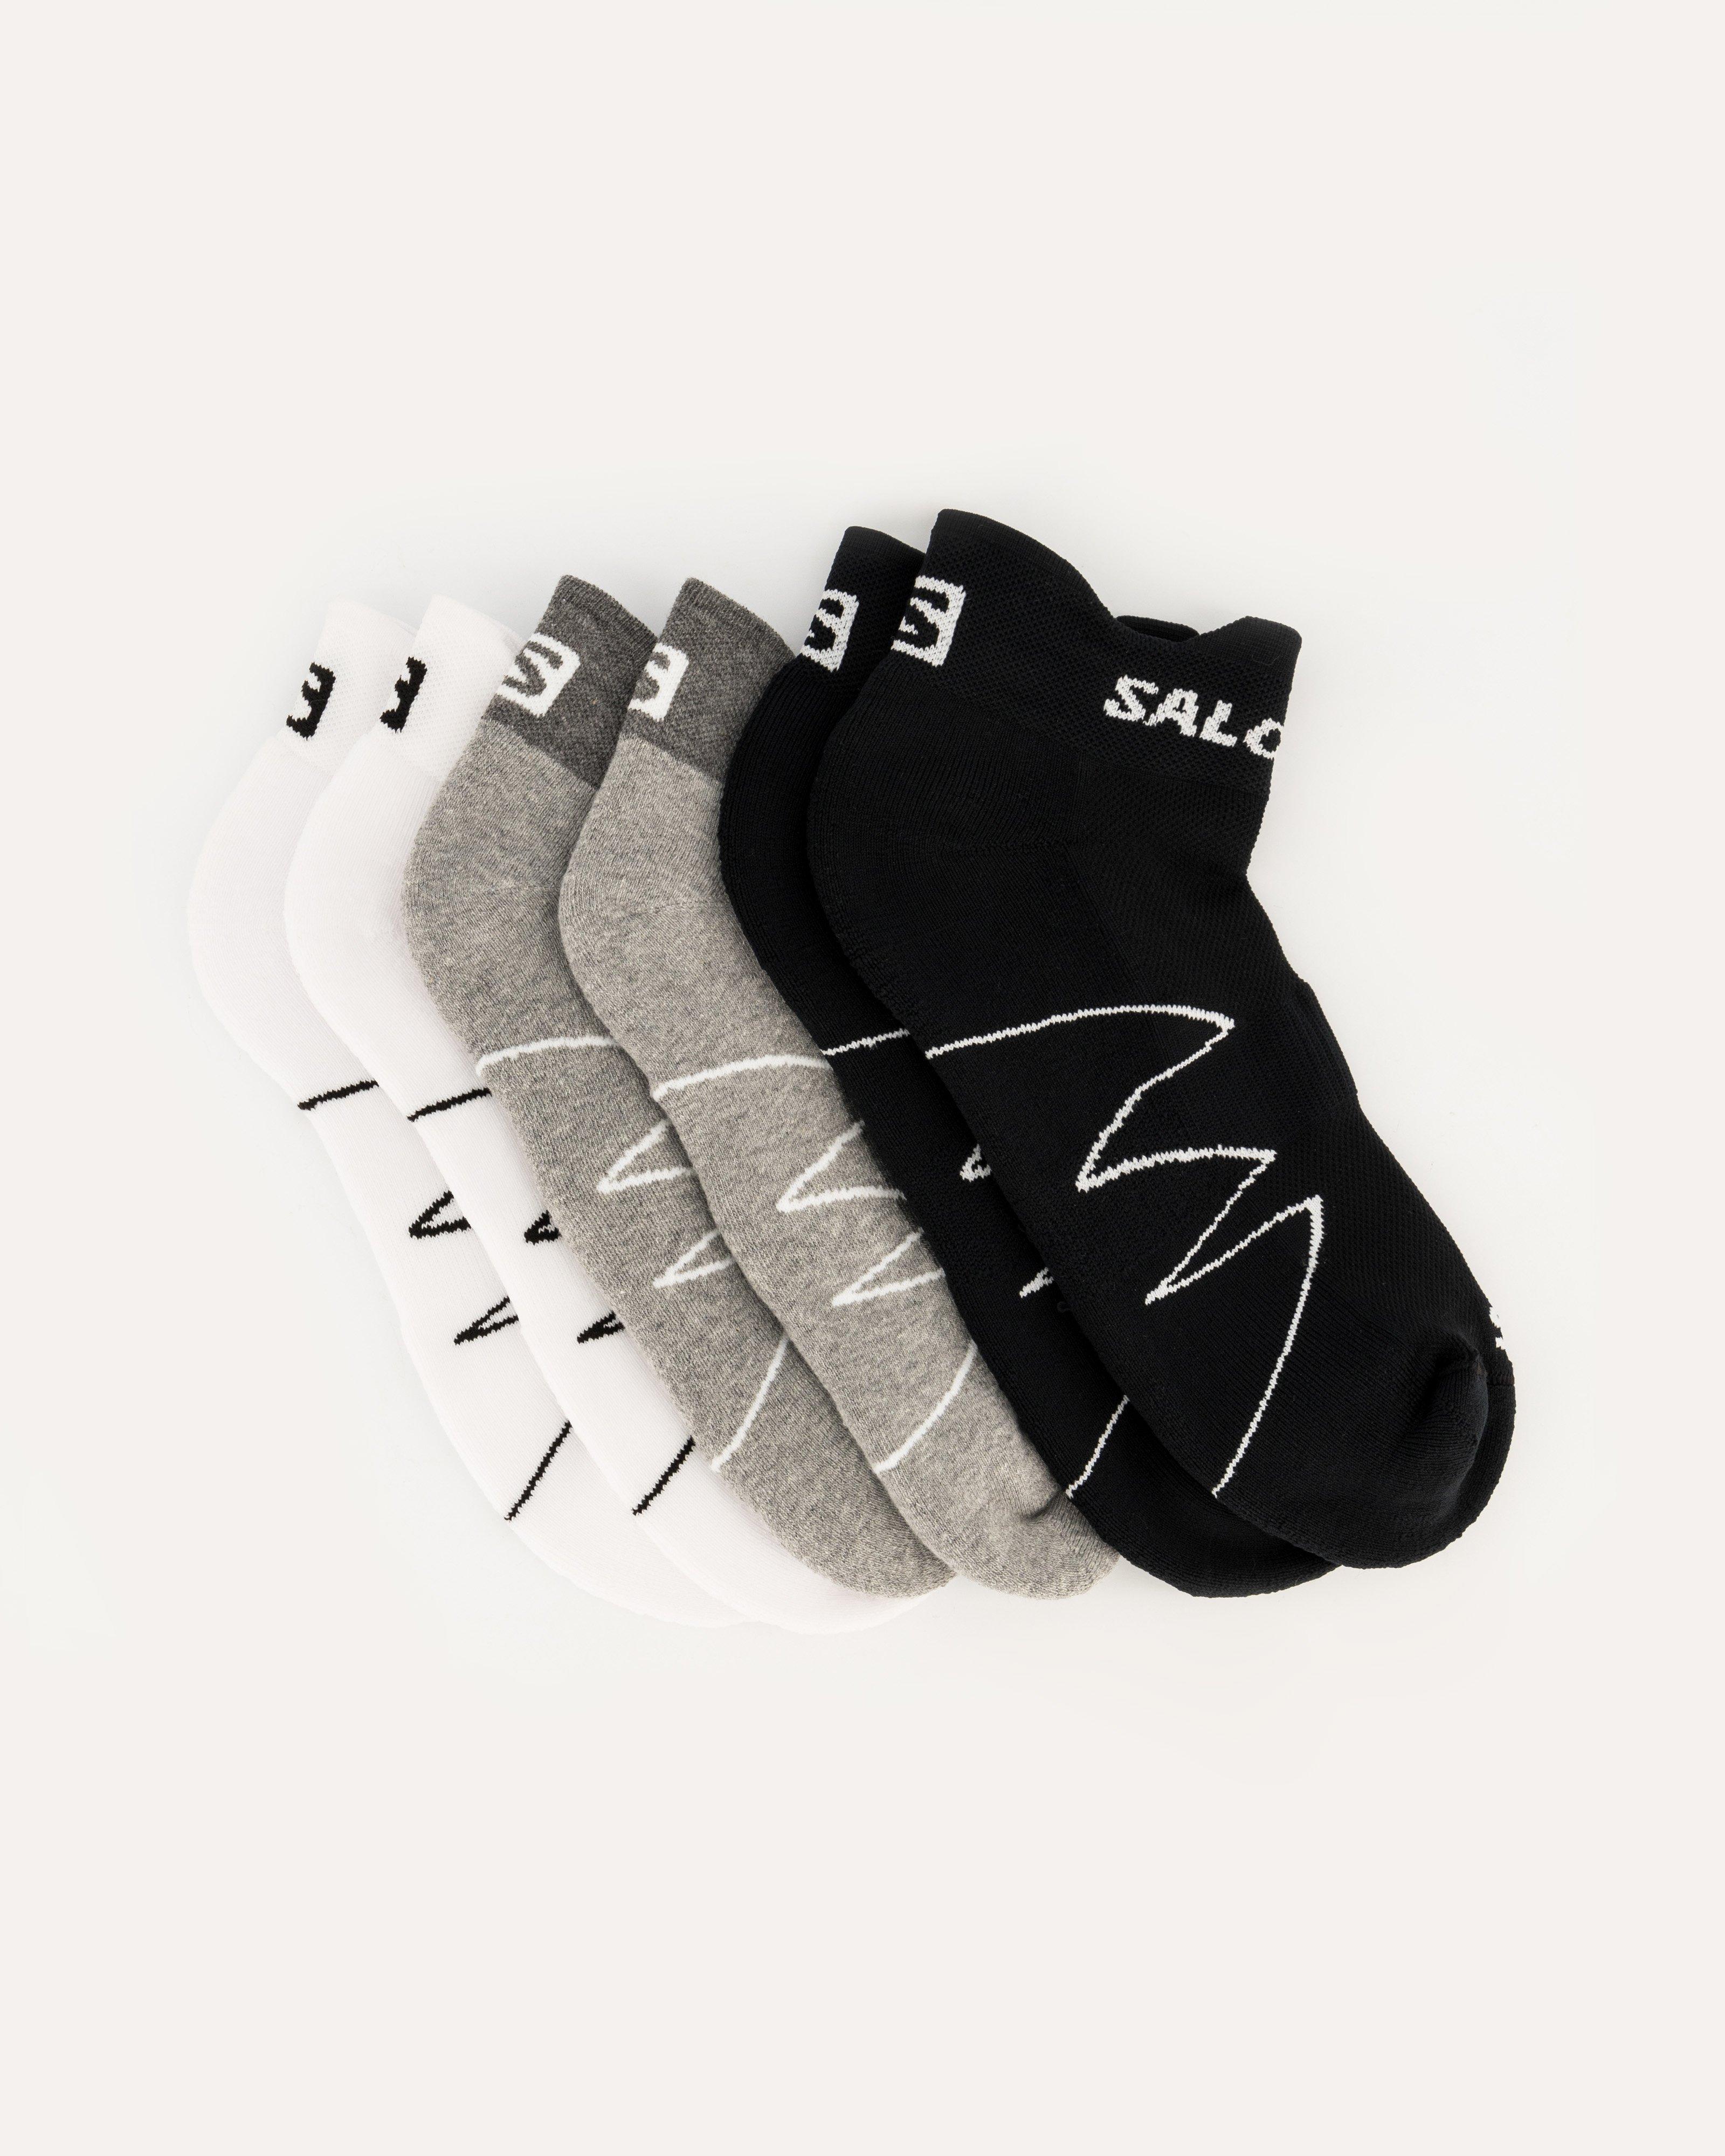 Salomon Women's XA Sonic Socks - 3 Pack -  Assorted